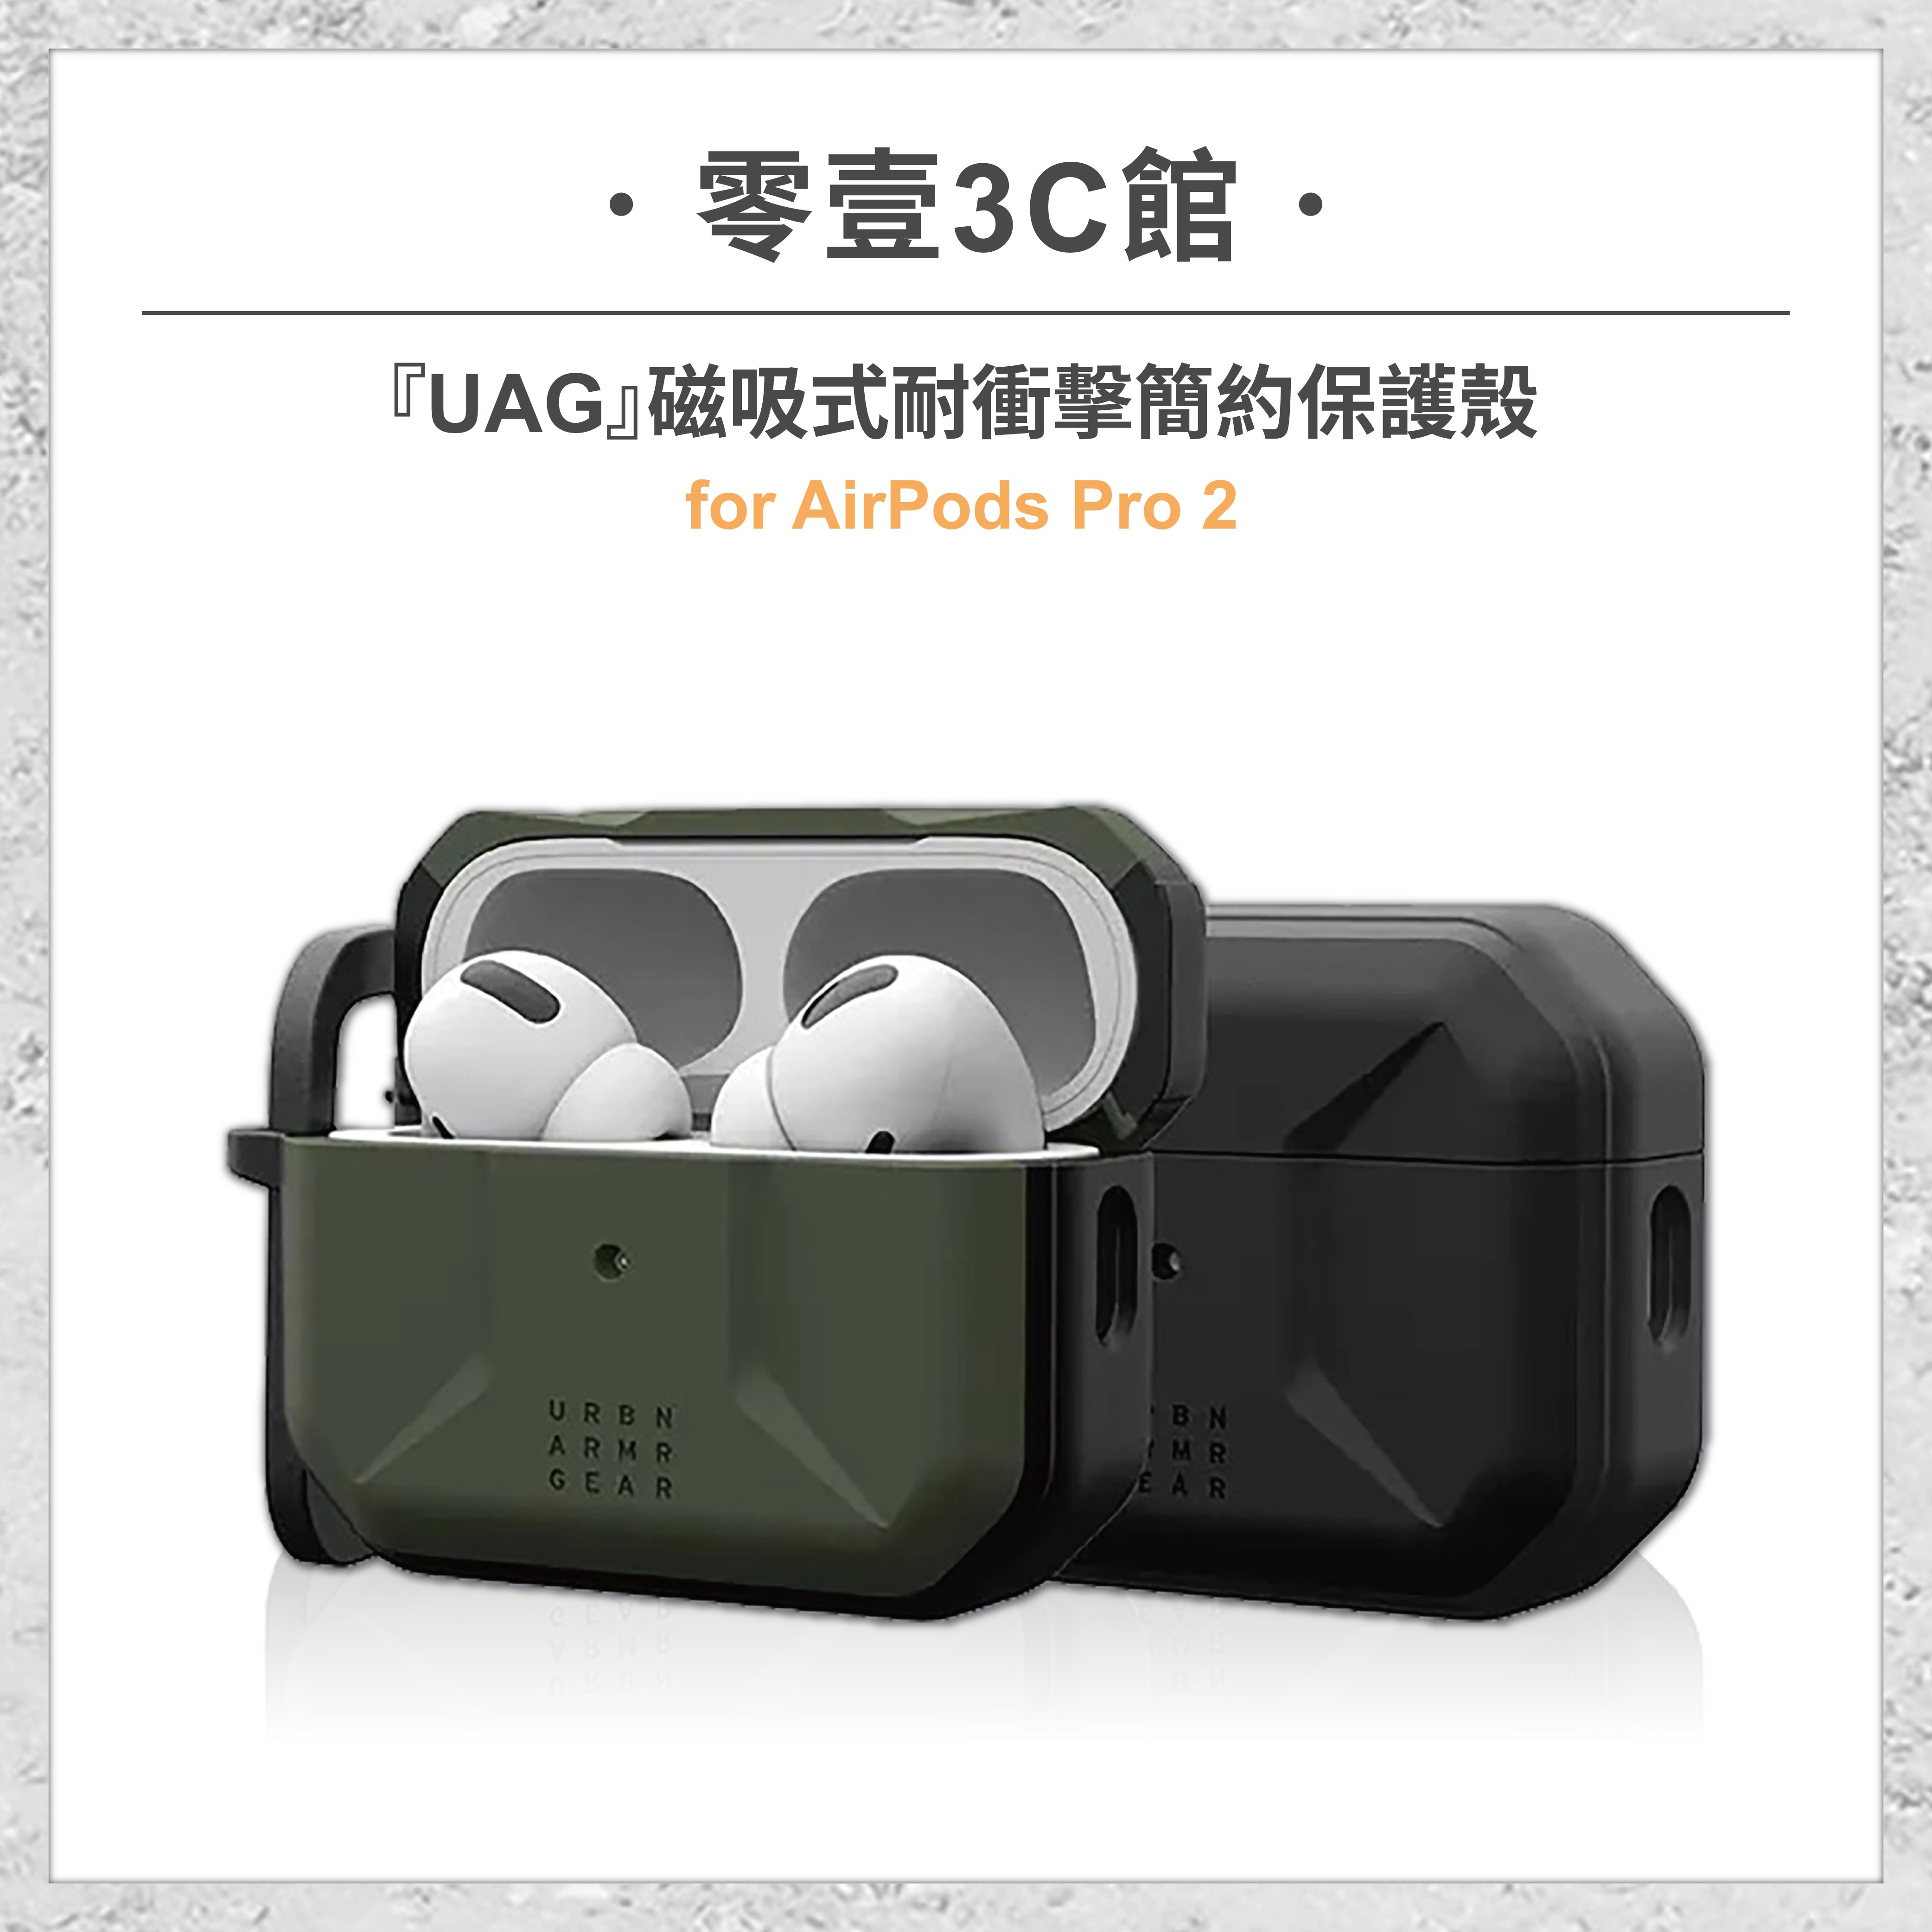 『UAG』磁吸式耐衝擊簡約保護殼 for AirPods Pro 2 耳機防摔保護殼